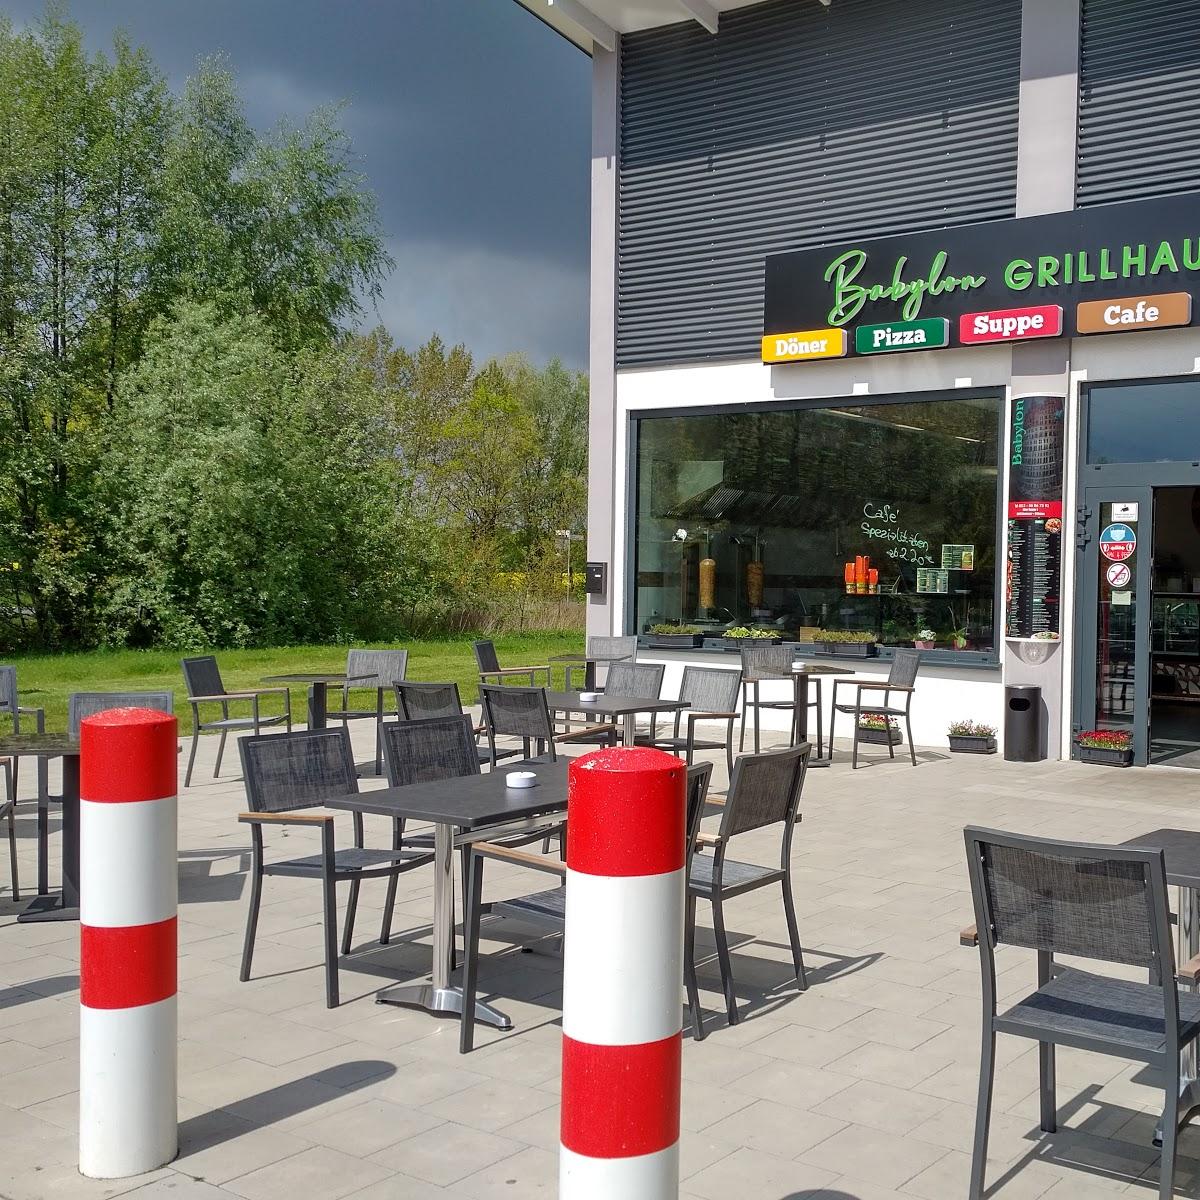 Restaurant "Babylon Helal Grillhaus und Kebab" in Hannover